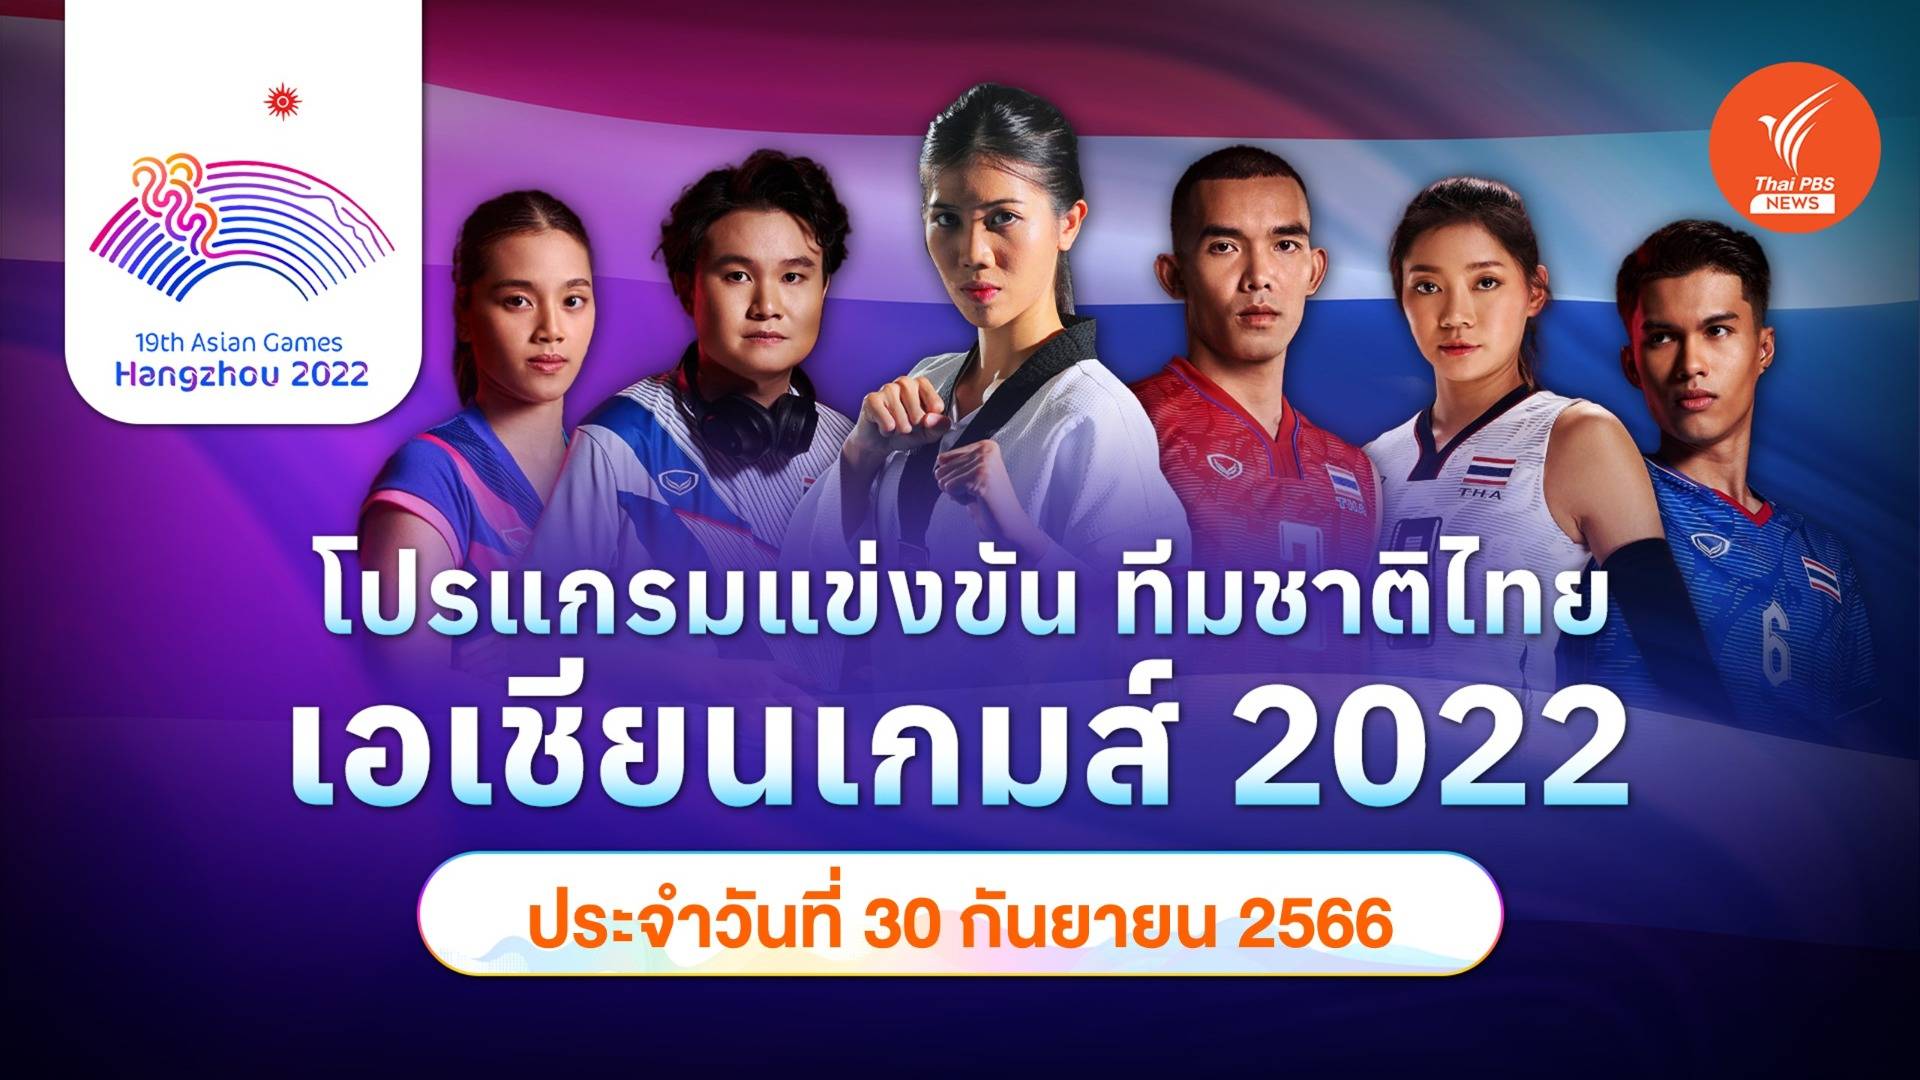 โปรแกรมการแข่งขัน เอเชียนเกมส์ 2022 ทัพนักกีฬาไทย วันที่ 30 ก.ย.66  